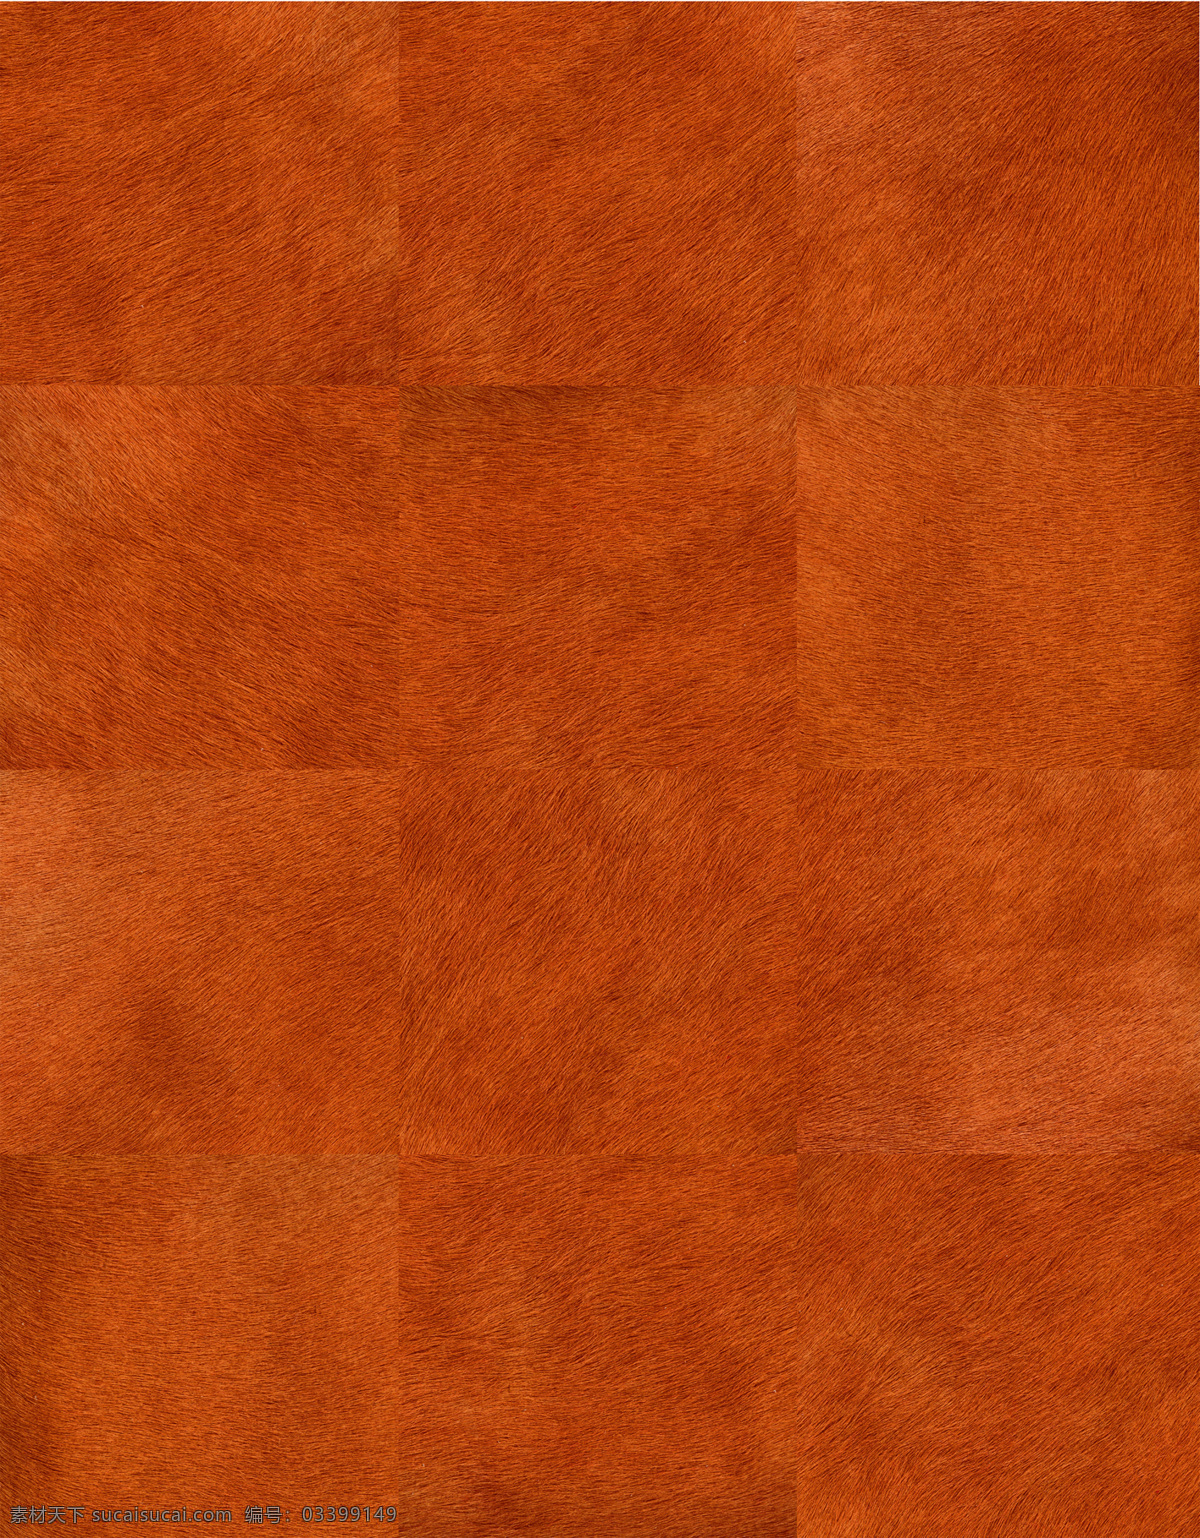 拼接 地毯 贴图 3d材质贴图 地毯贴图素材 暖 色系 材质 图案 地毯贴图下载